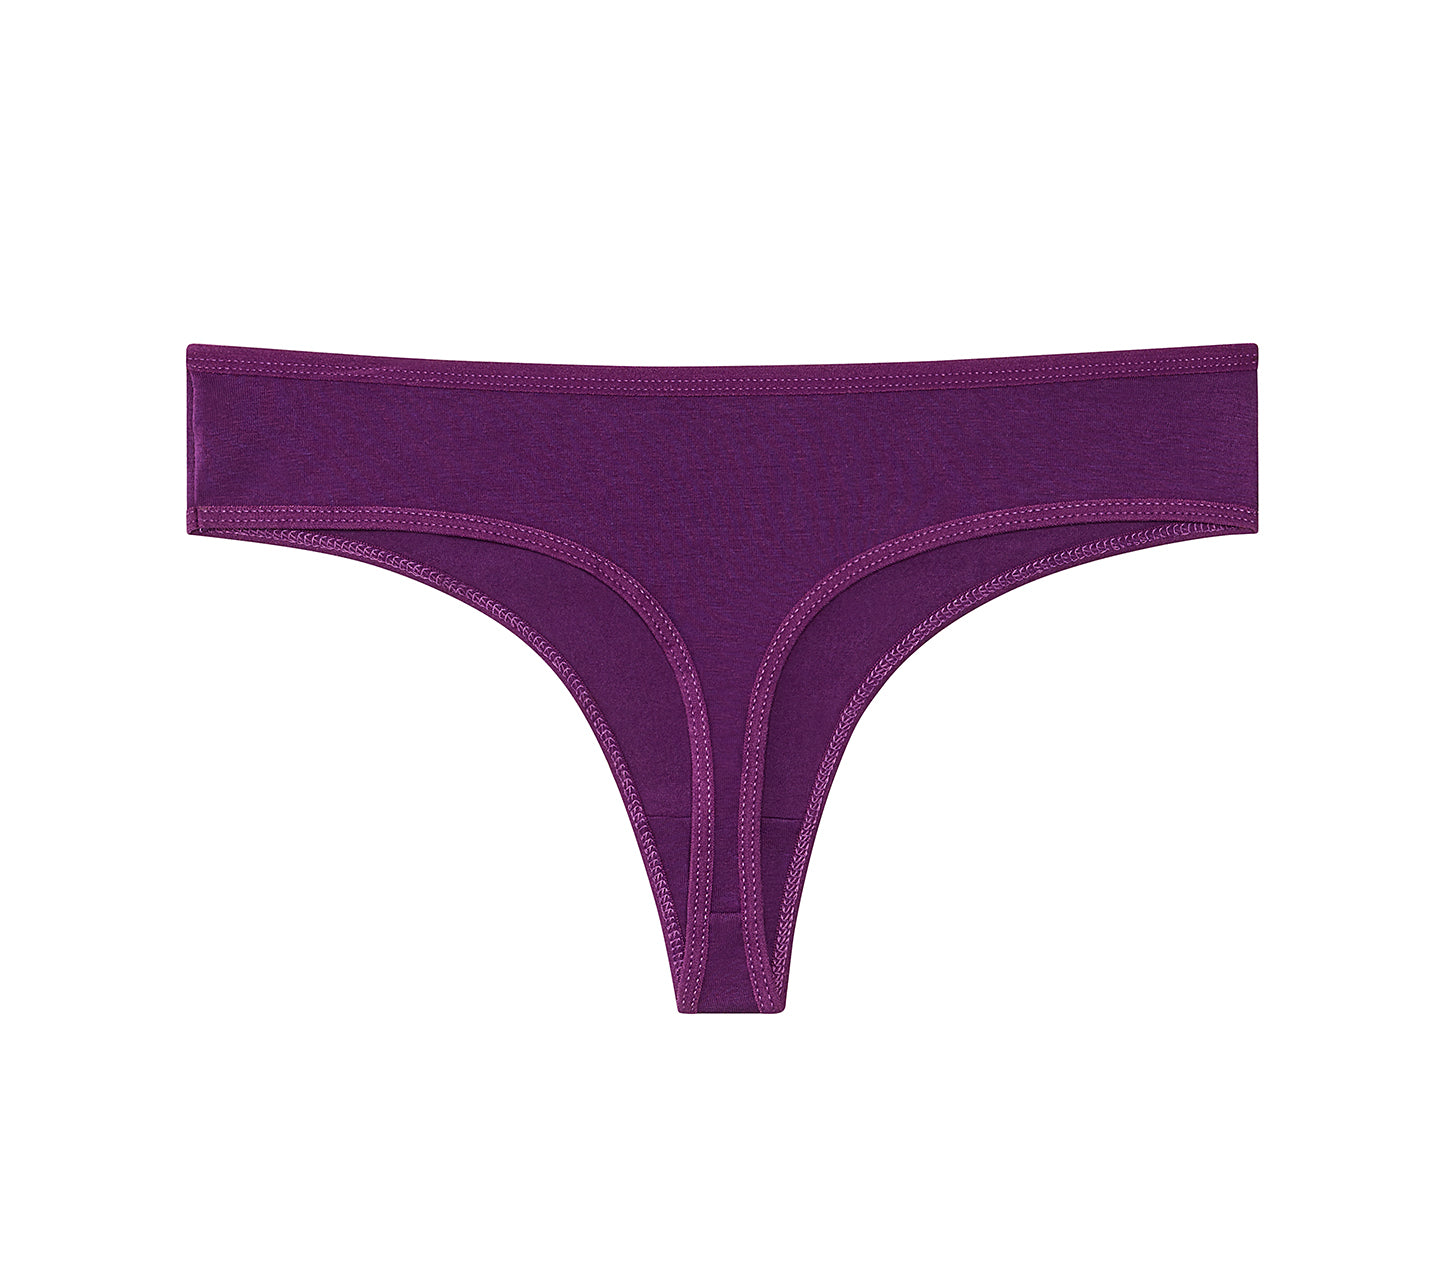 Women's Cotton Thongs Dark Colors G String Underwear – Nabtos